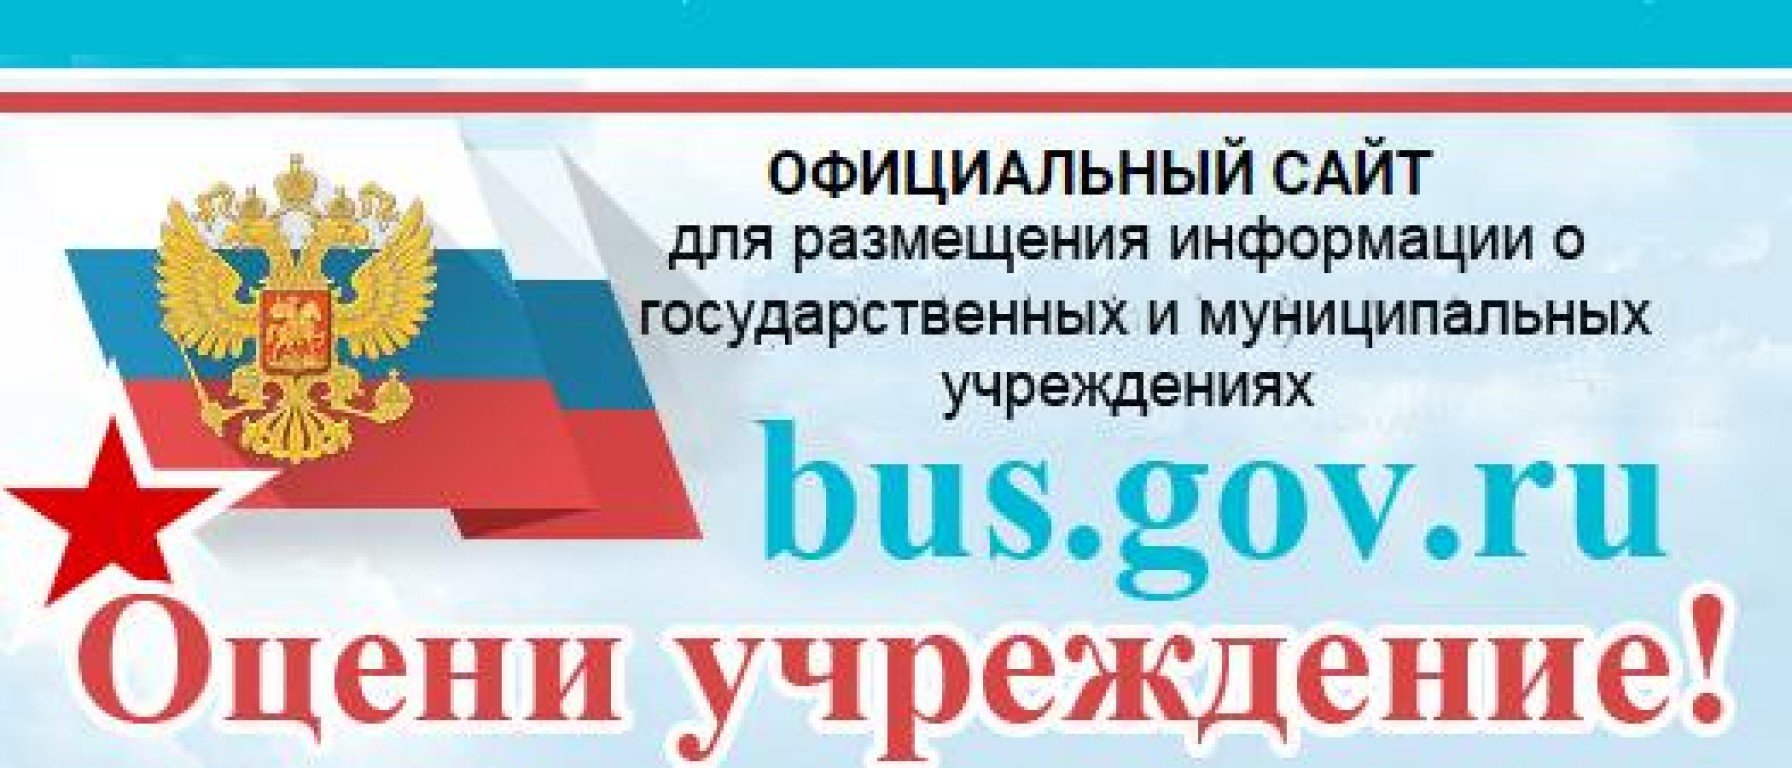 Размещение информации о государственных муниципальных учреждениях. Бас гов ру баннер. Bus gov баннер. Bus.gov.ru. Bus.gov.ru баннер.